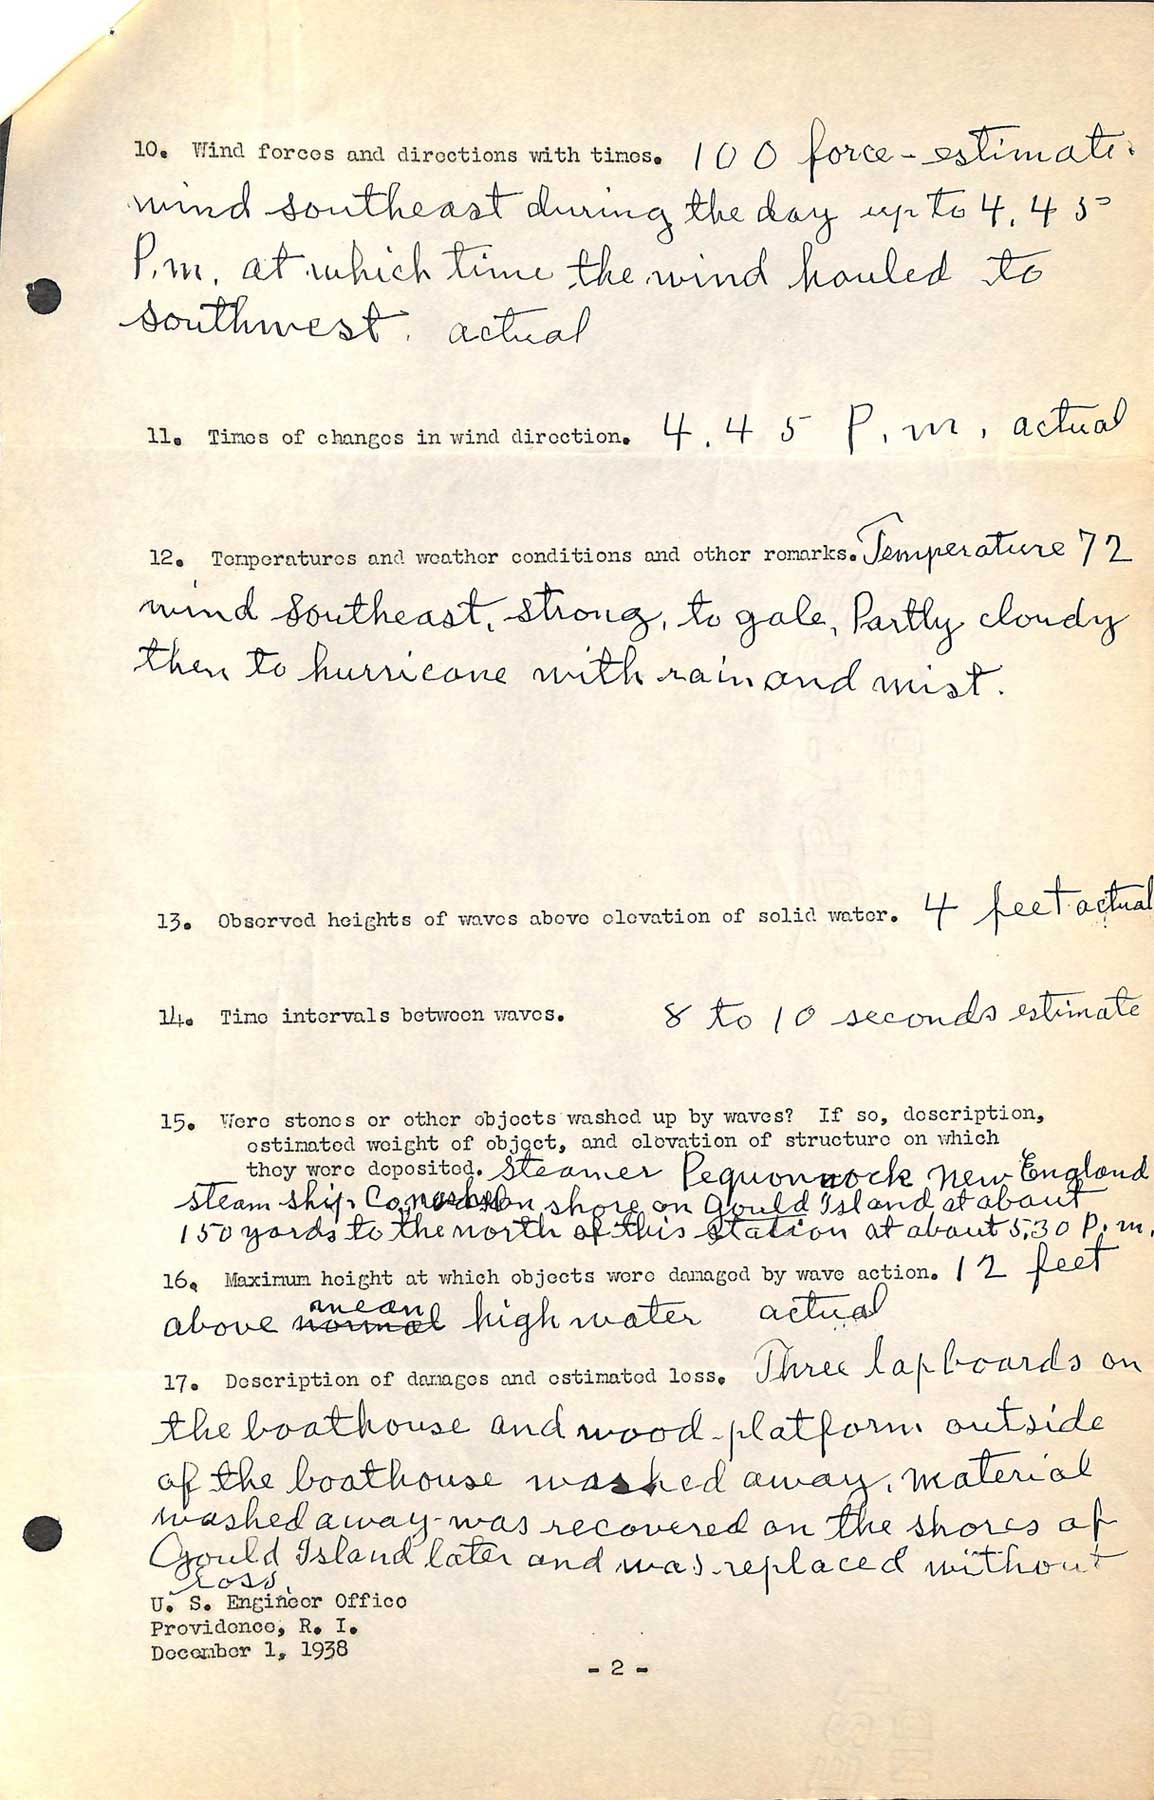 Gould Island Light - A questionnaire regarding the hurricane of September 21, 1938